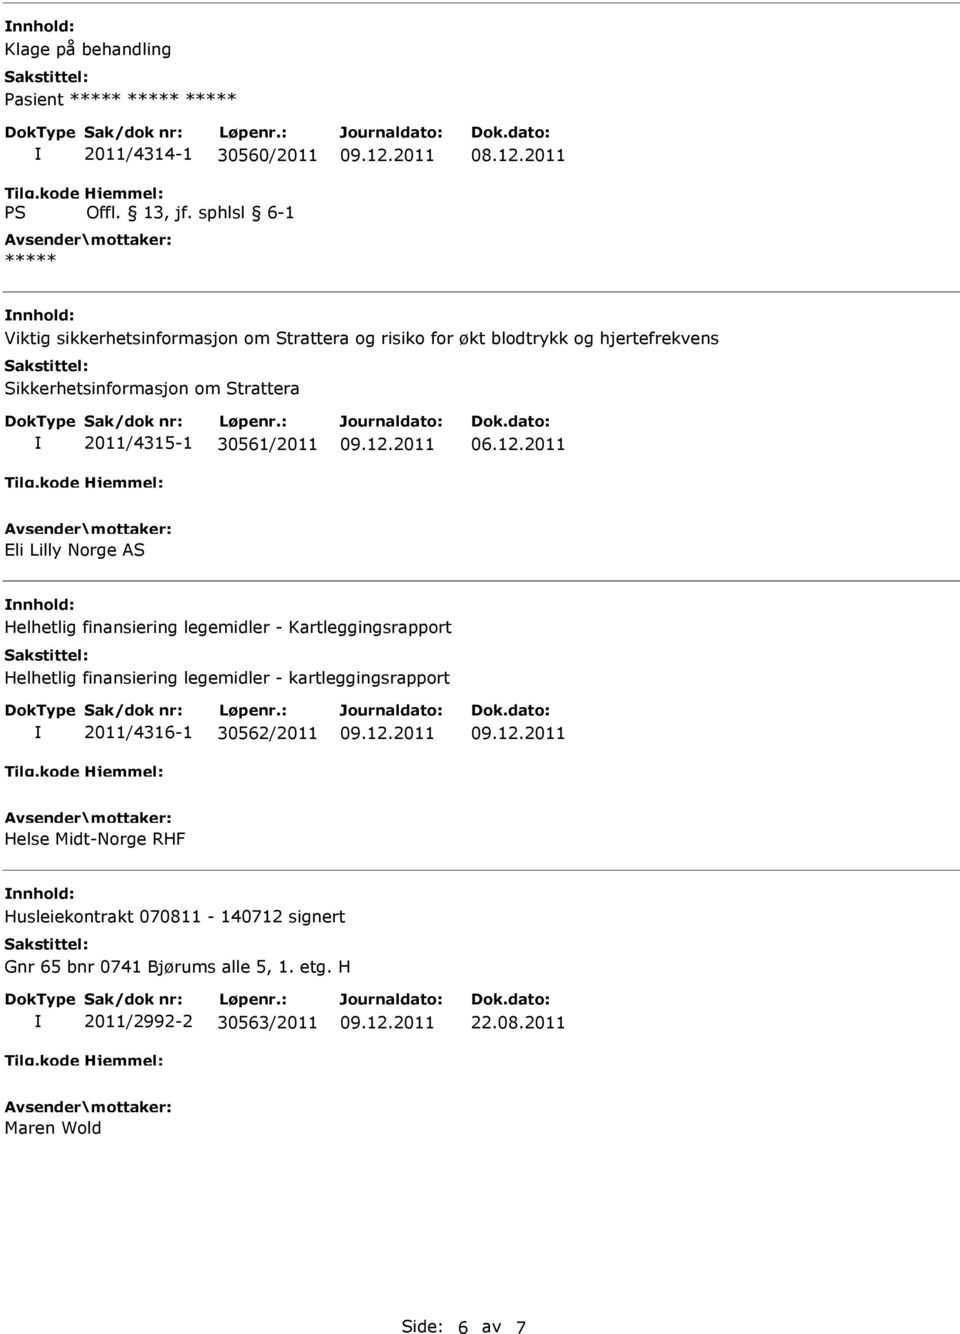 legemidler - Kartleggingsrapport Helhetlig finansiering legemidler - kartleggingsrapport 2011/4316-1 30562/2011 Helse Midt-Norge RHF